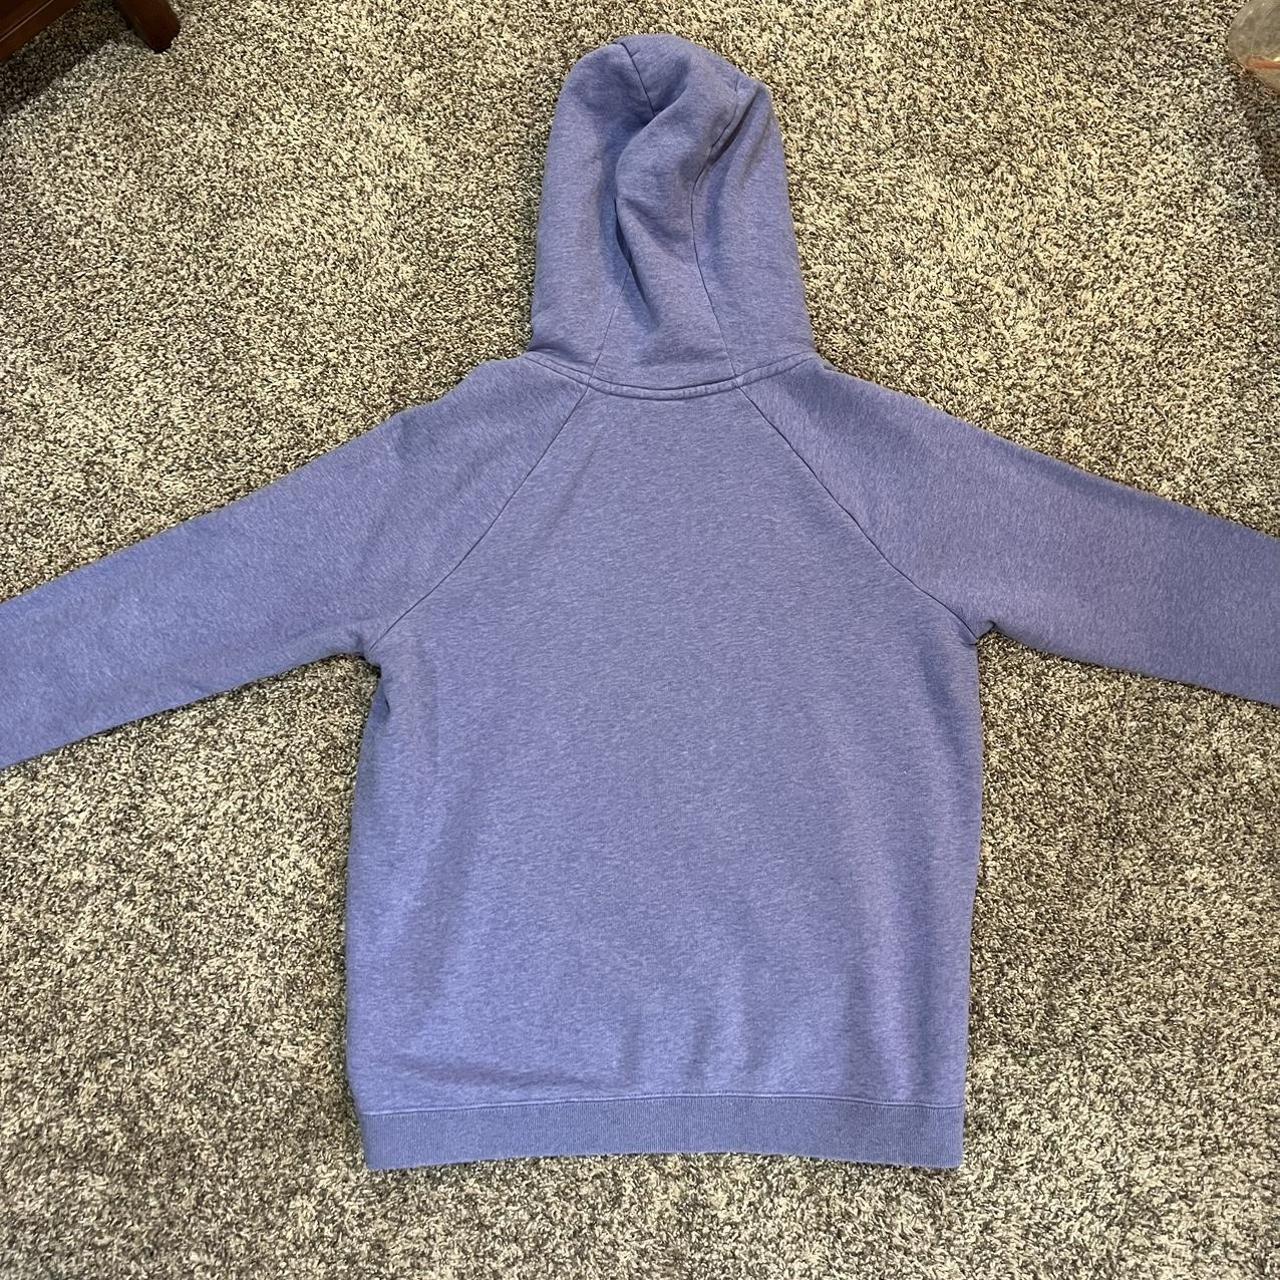 Women’s size medium purple/periwinkle Nike hoodie my